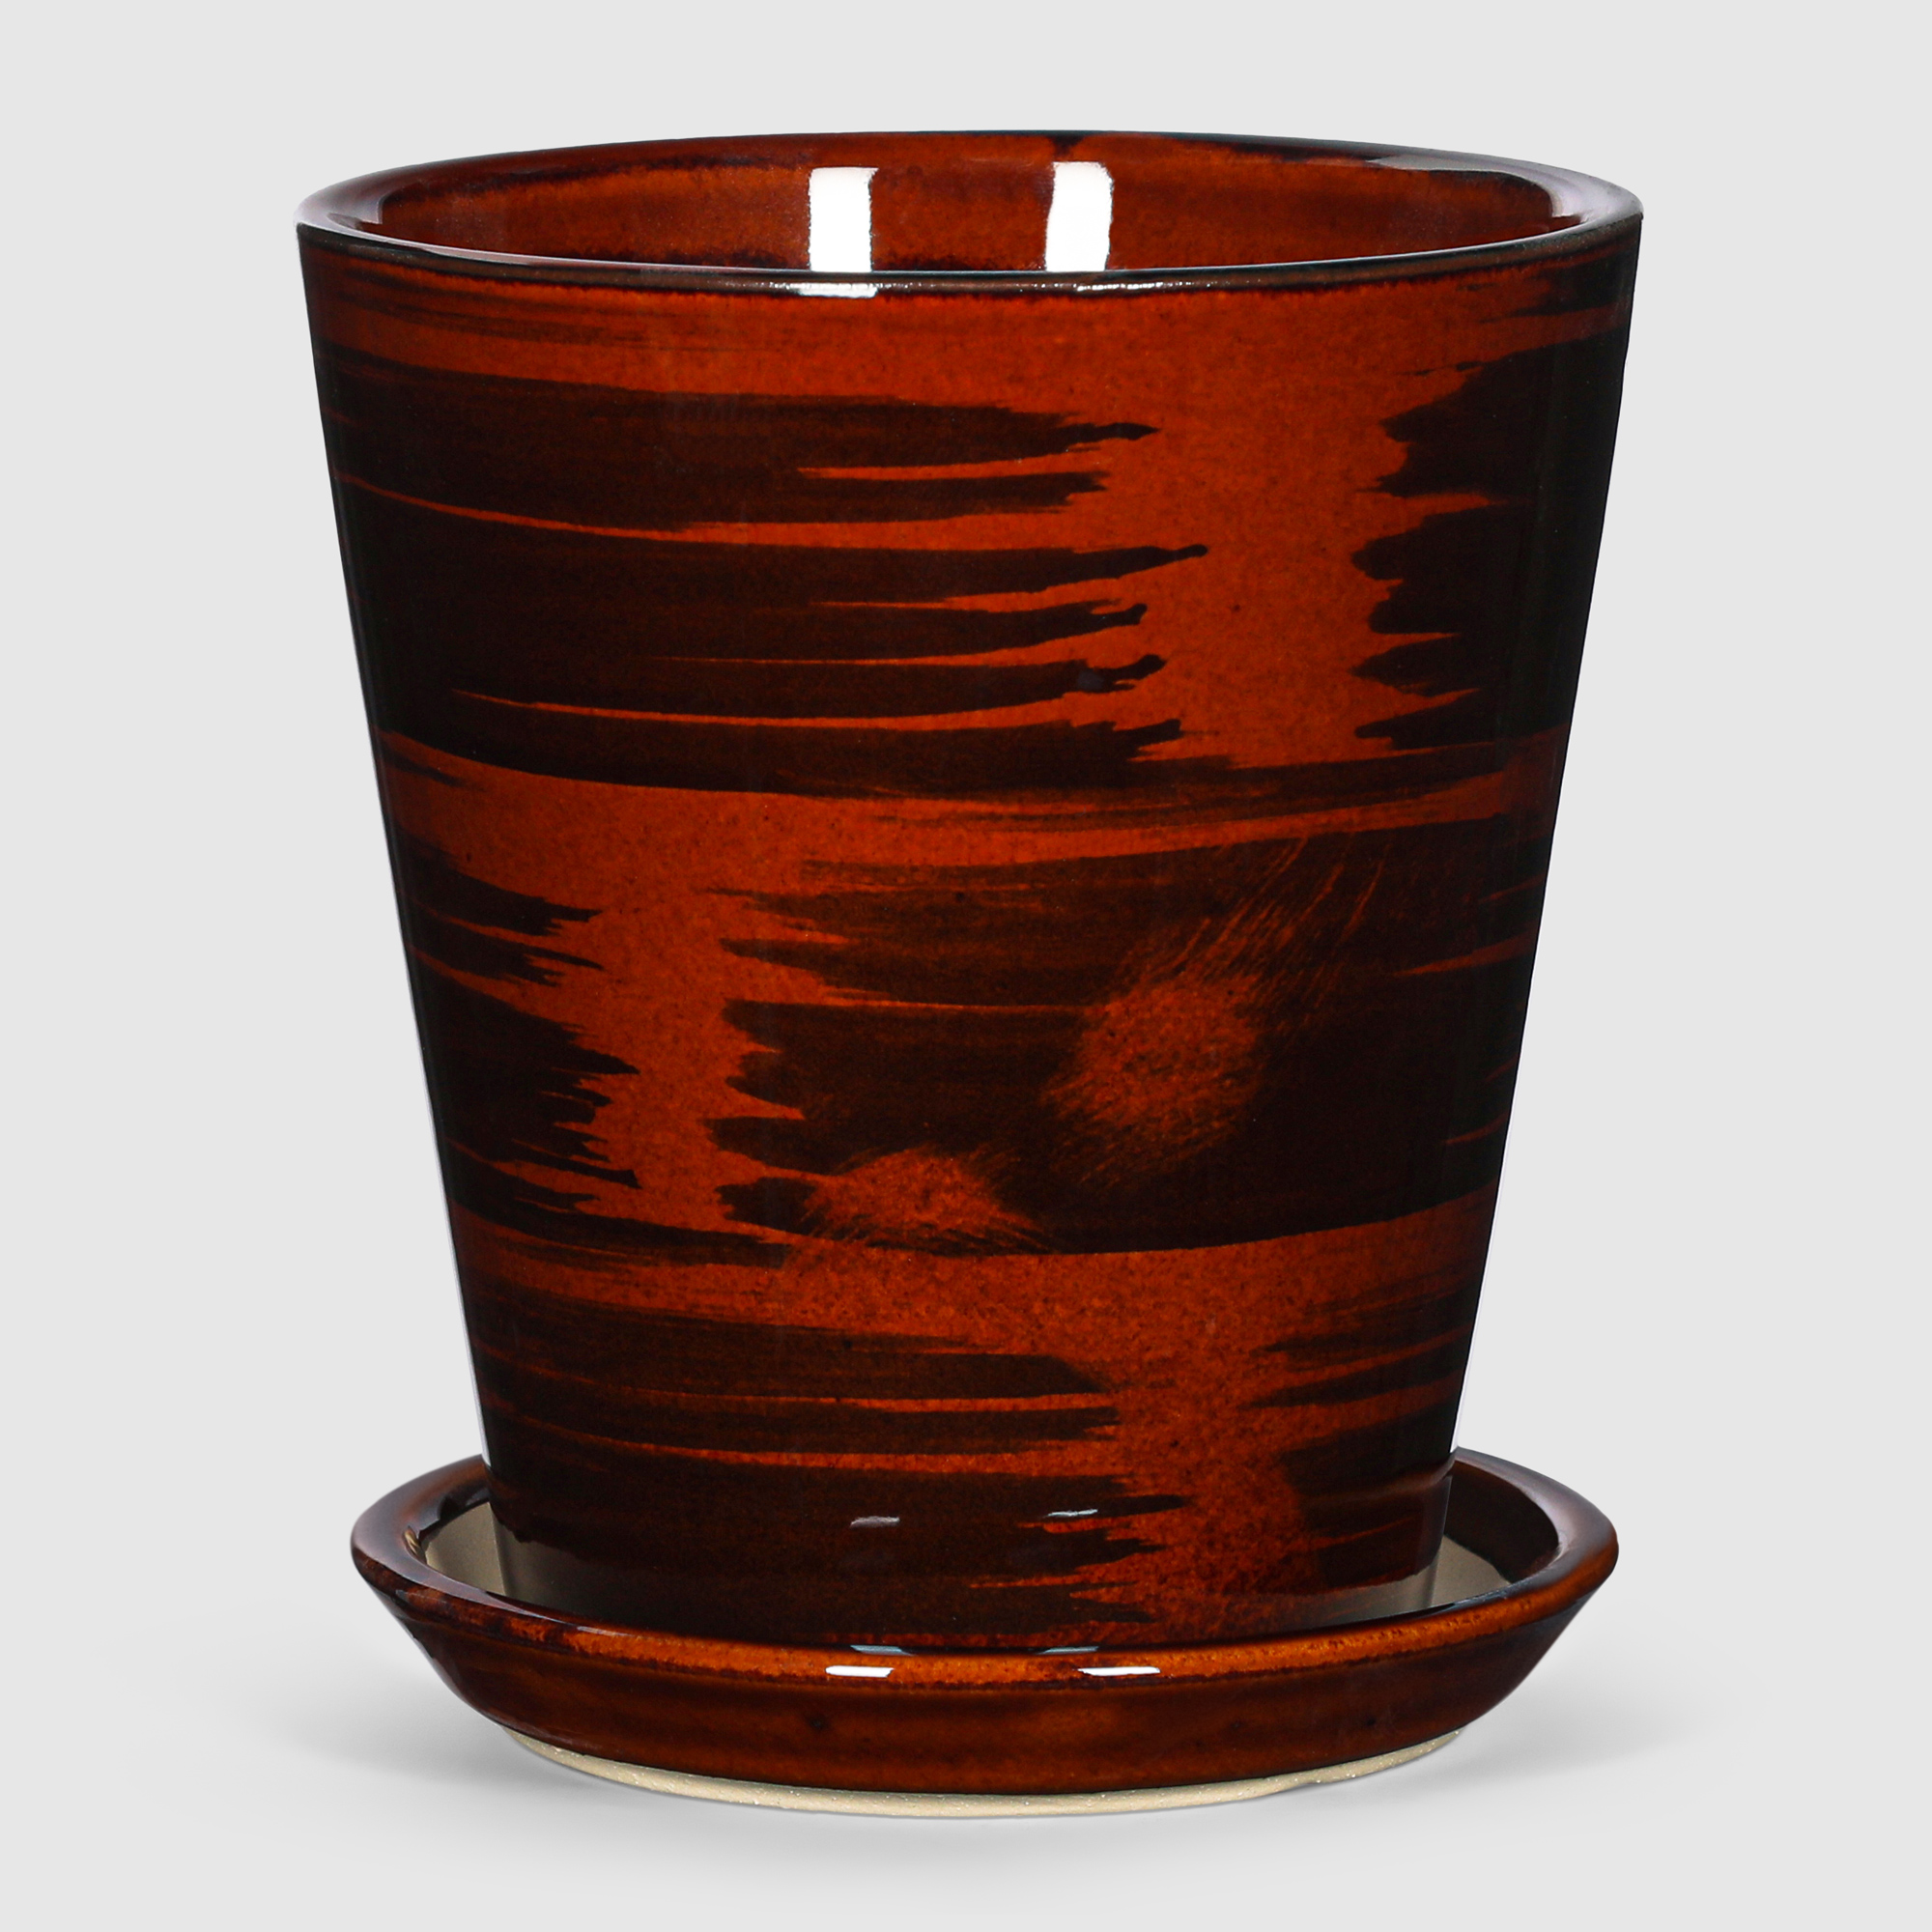 Кашпо керамическое для цветов Shine Pots 13x15см коричневый глянец кашпо керамическое для ов shine pots 20x20см коричневый глянец